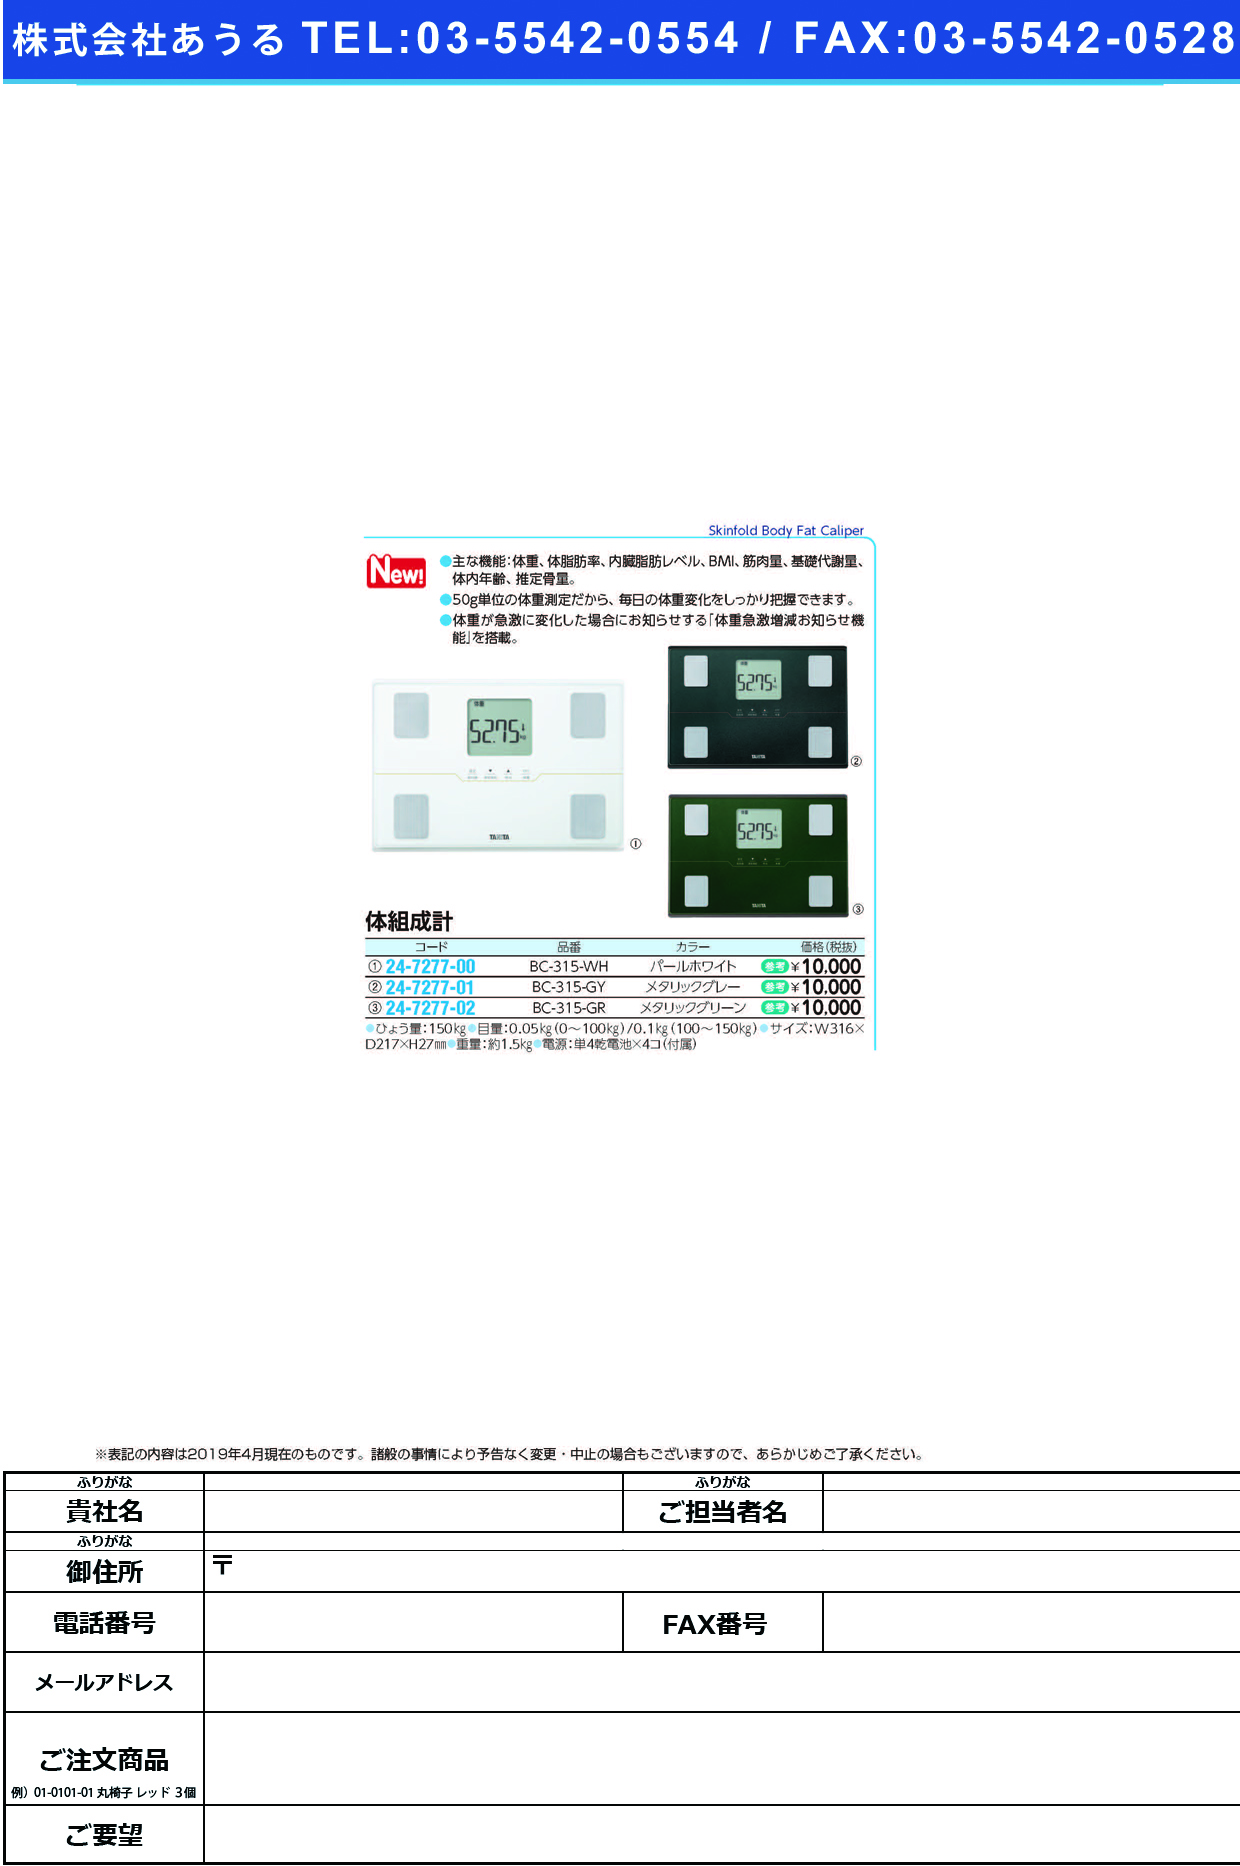 (24-7277-02)体組成計BC-315-GR(ﾒﾀﾘｯｸｸﾞﾘｰﾝ ﾀｲｿｾｲｹｲ(タニタ)【1台単位】【2019年カタログ商品】